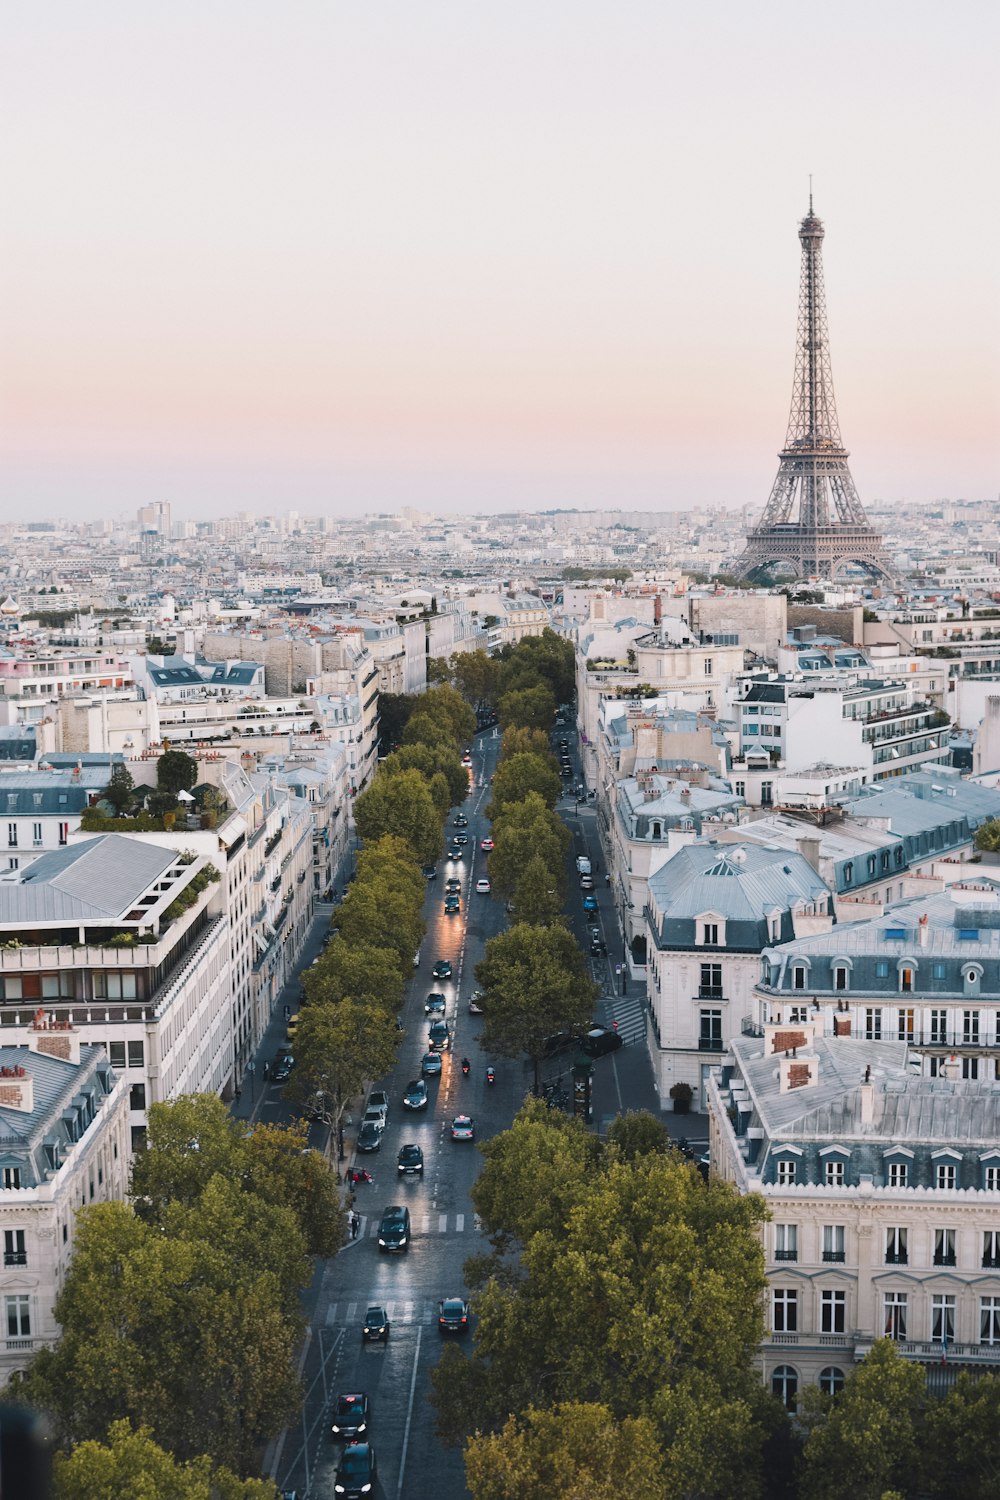 strada trafficata vicino alla Torre Eiffel a Parigi durante il giorno